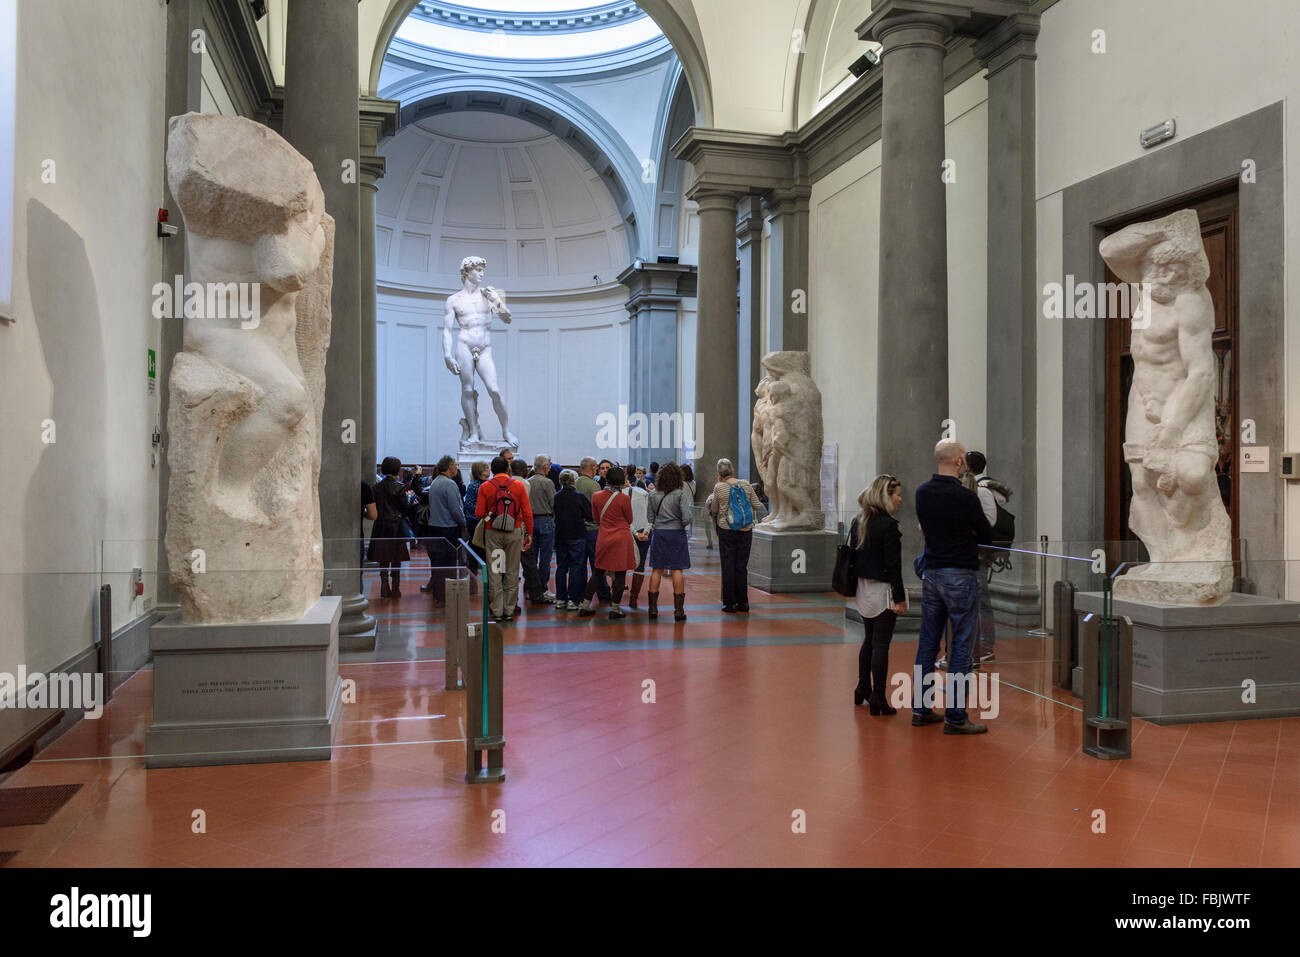 Florence. L'Italie. Les touristes visiter la statue de David de Michel-Ange à la Galleria dell'Accademia. Galerie de l'académie de Florence. Banque D'Images